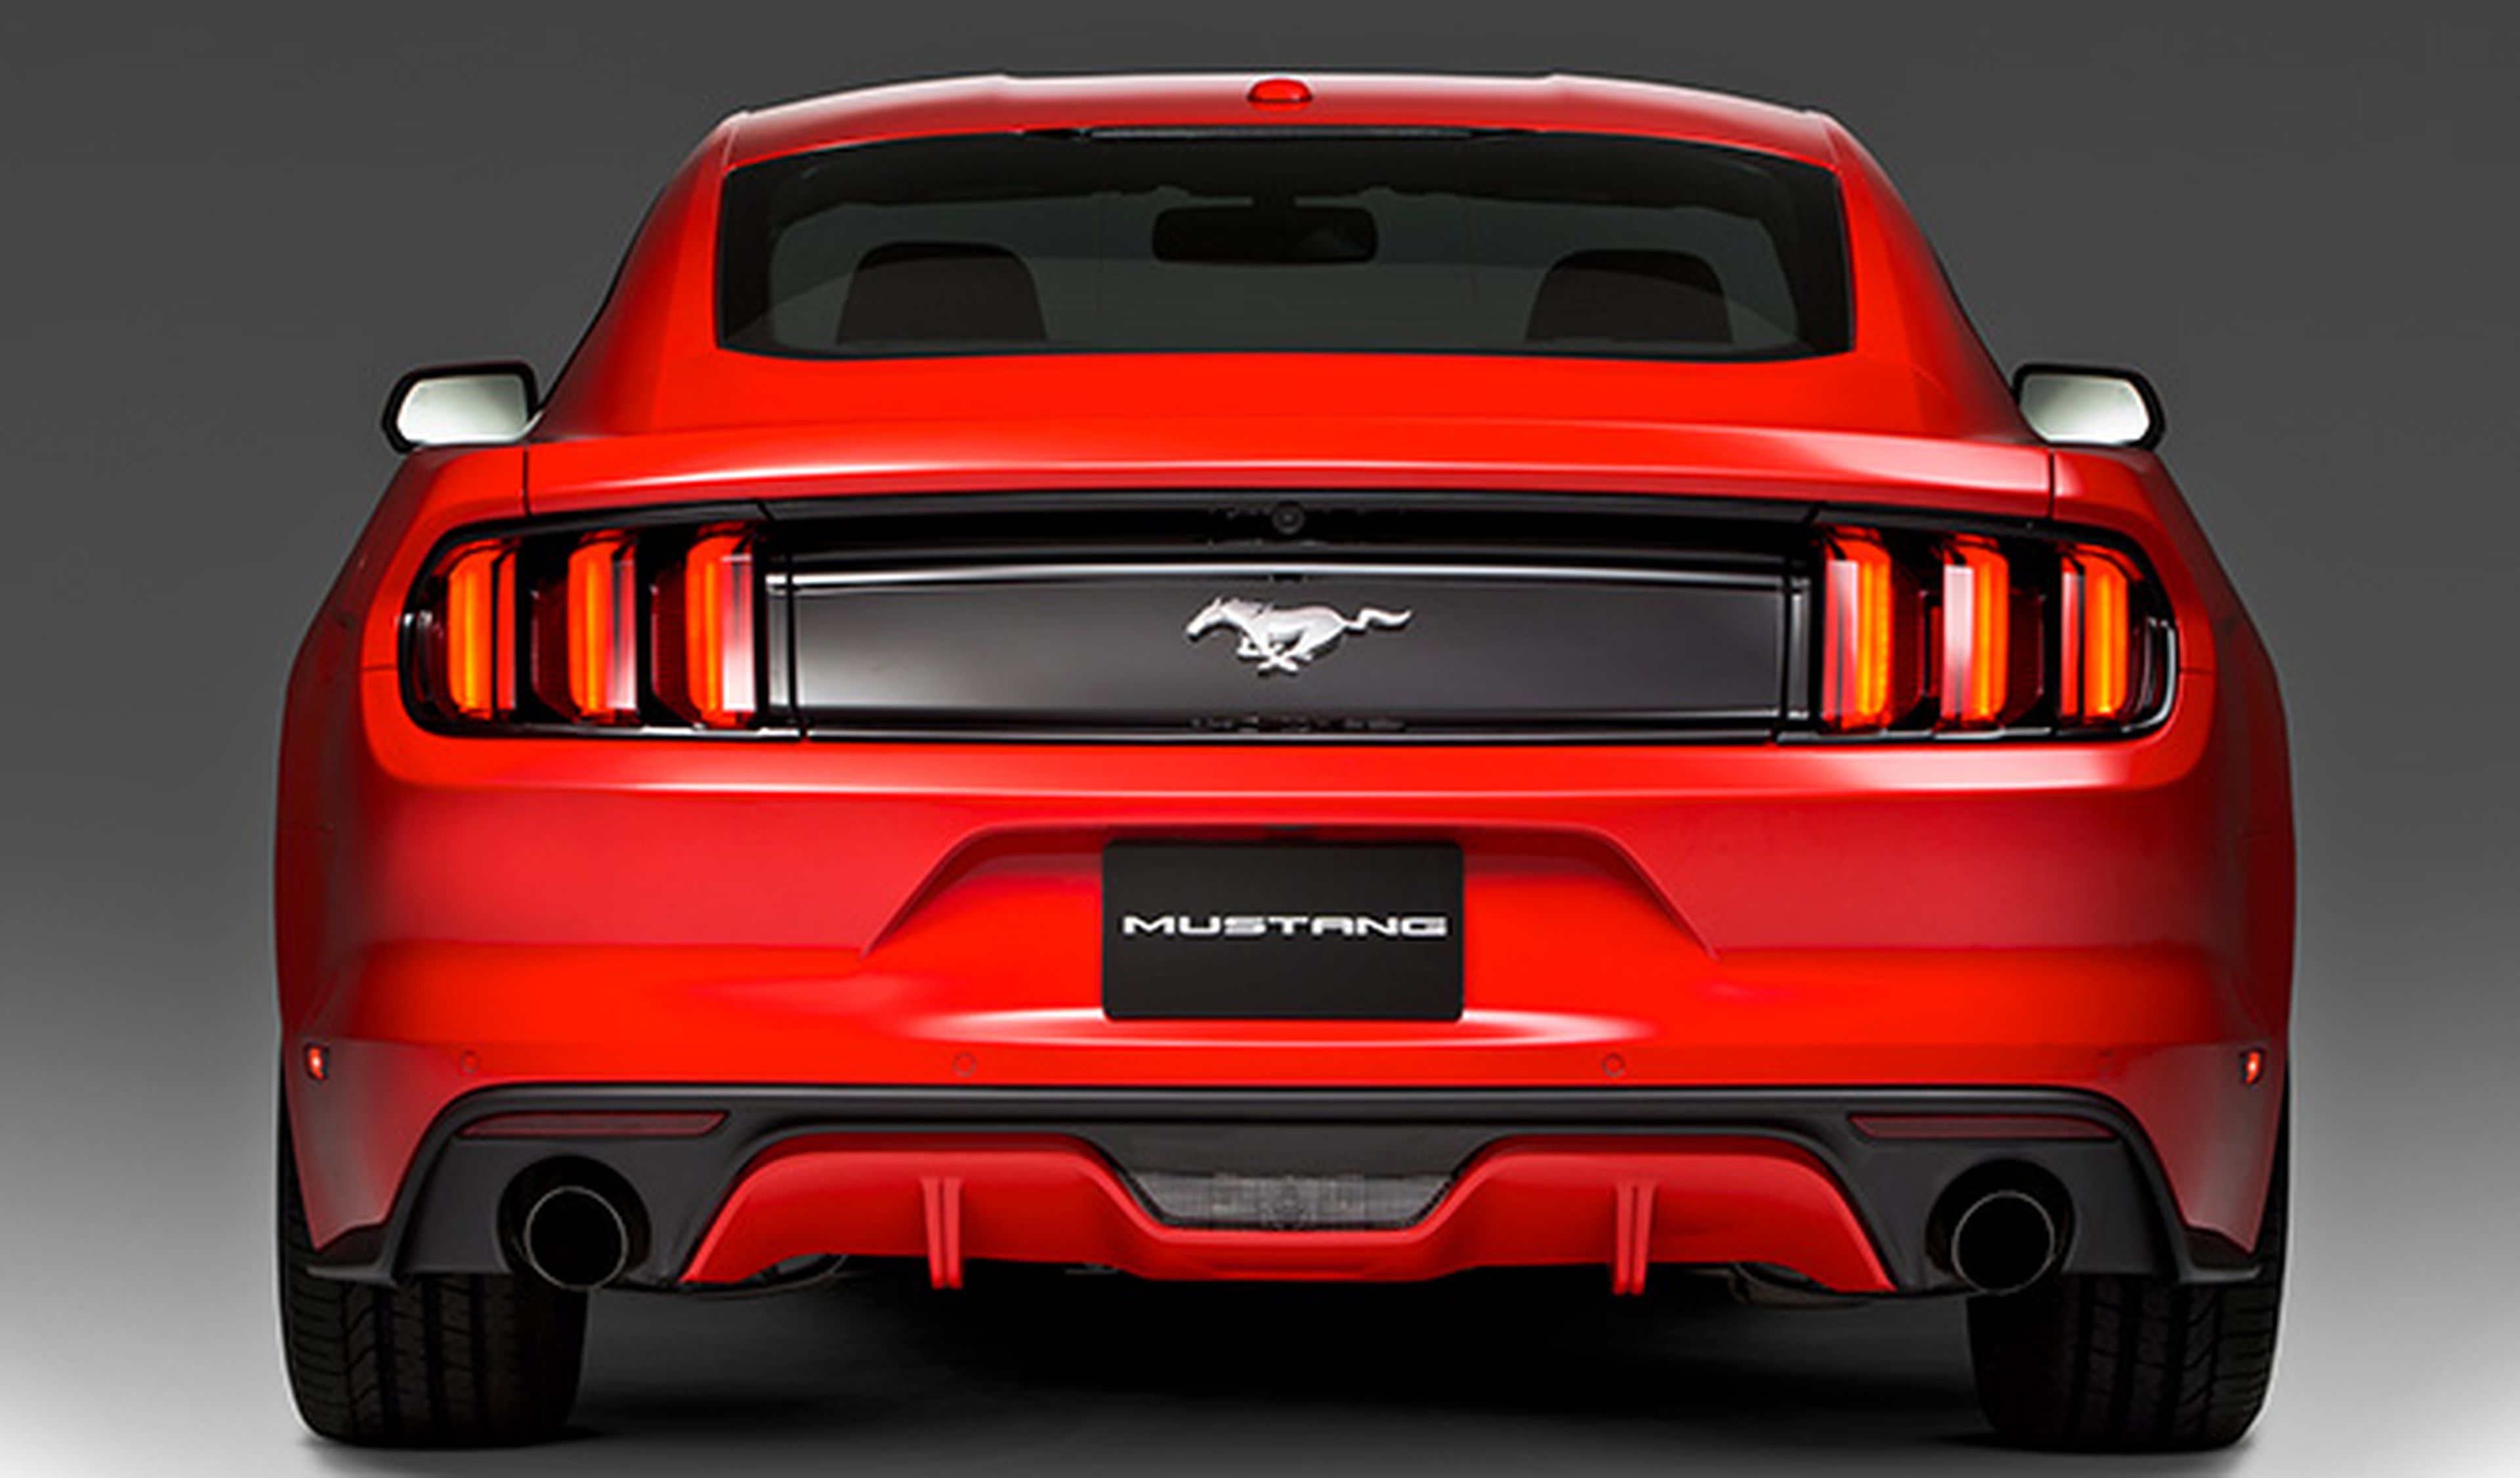 ¿Cambiarías el sonido del nuevo Mustang con un iPhone?